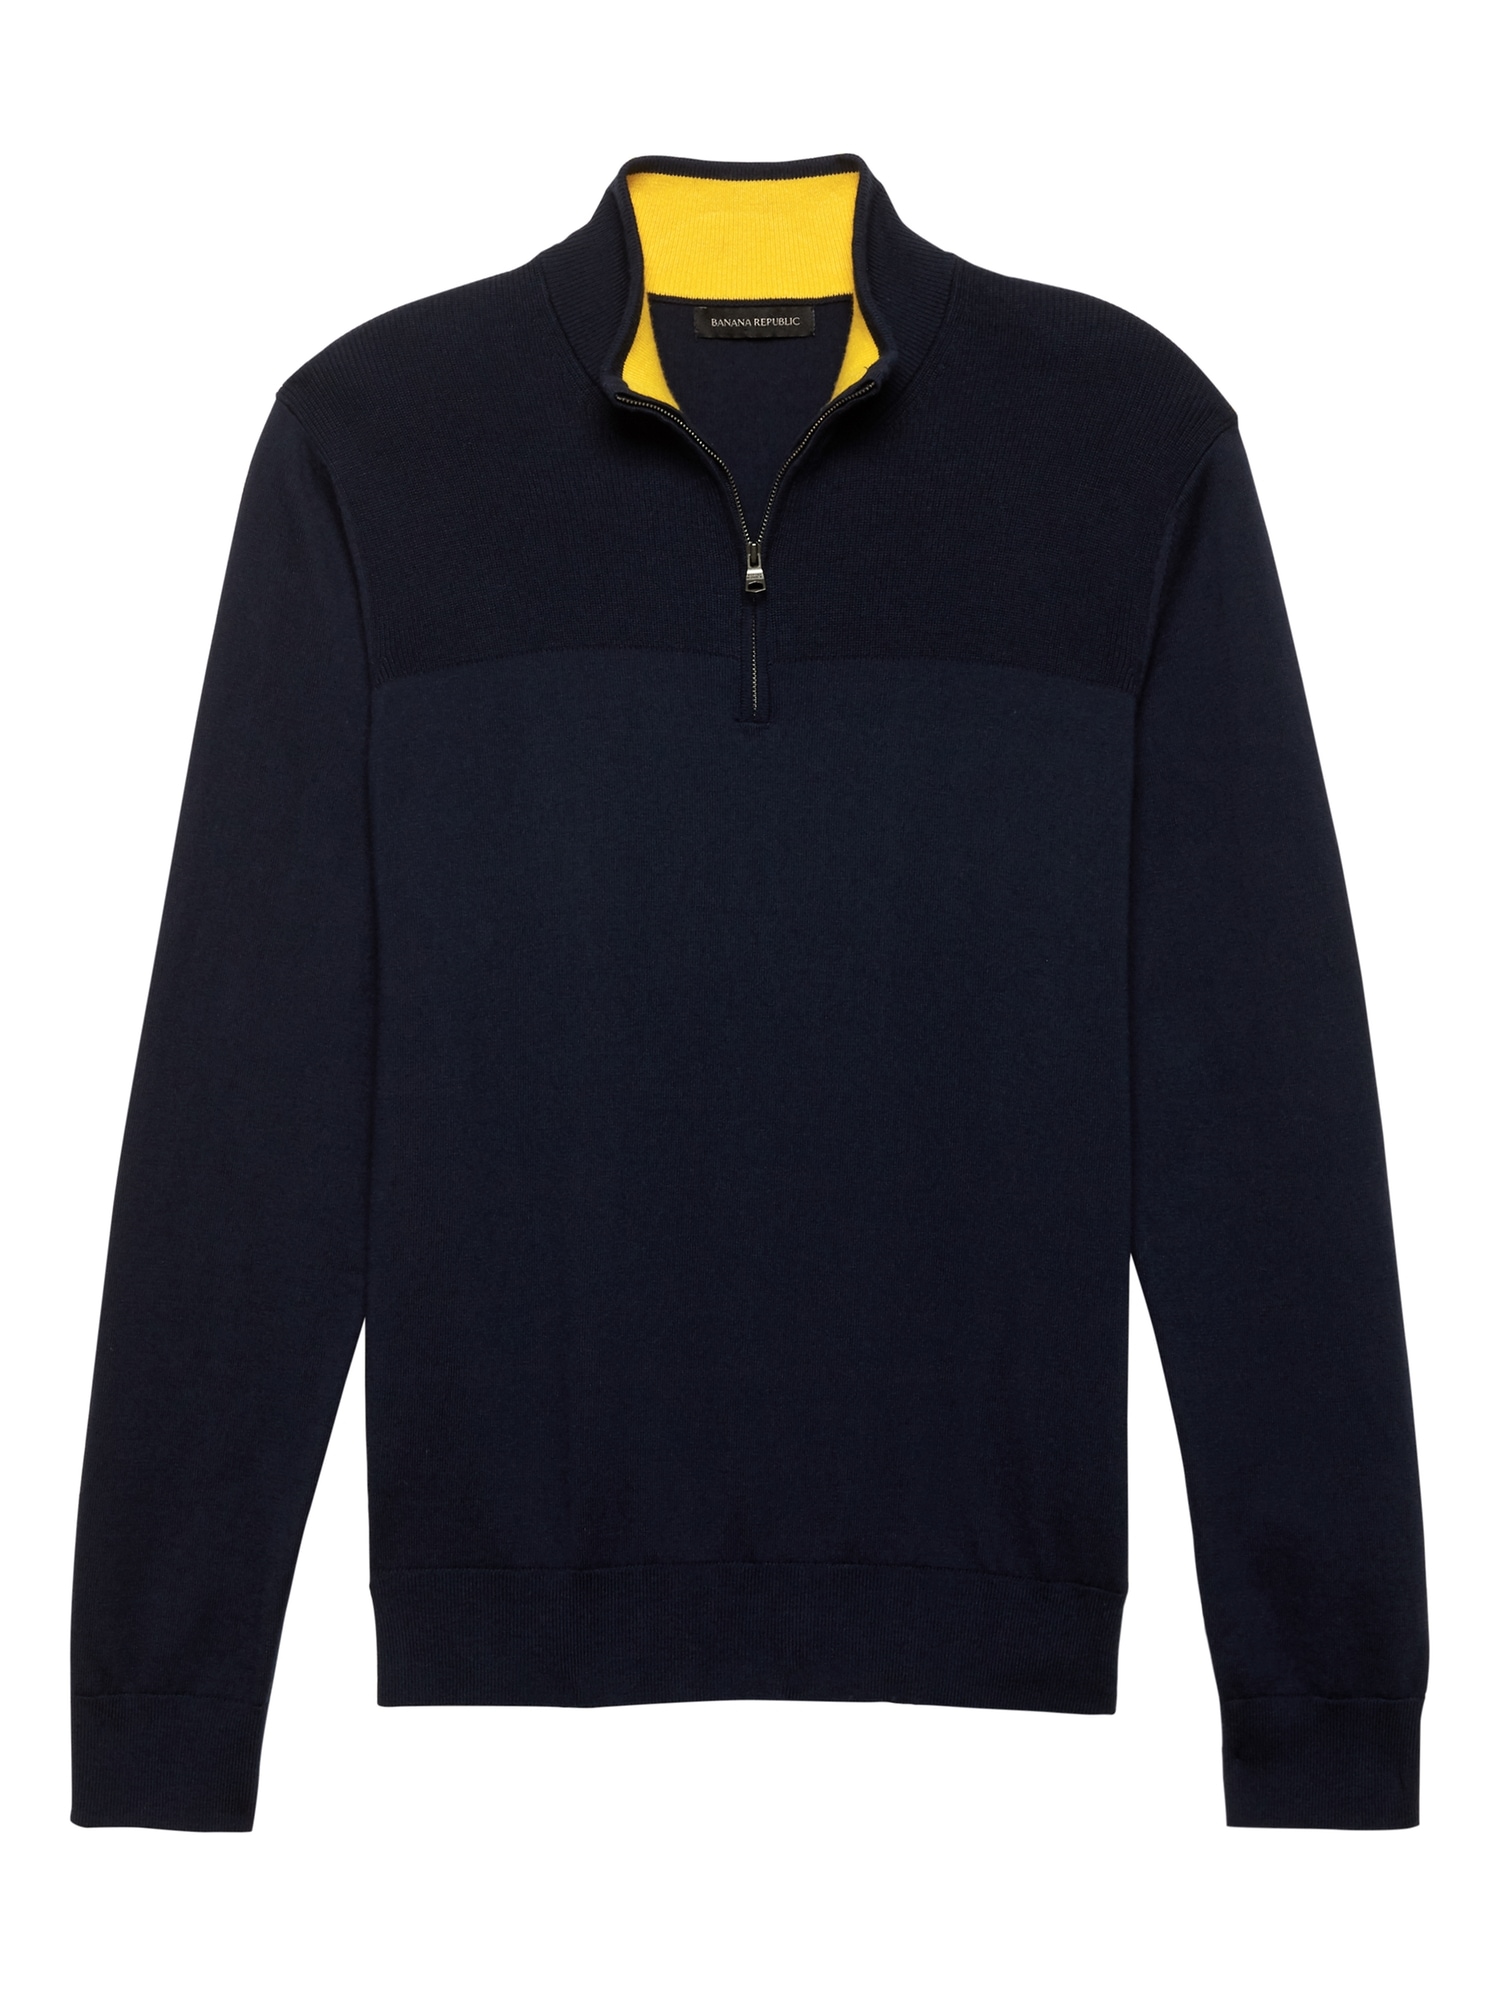 Cotton Cashmere Half-Zip Sweater